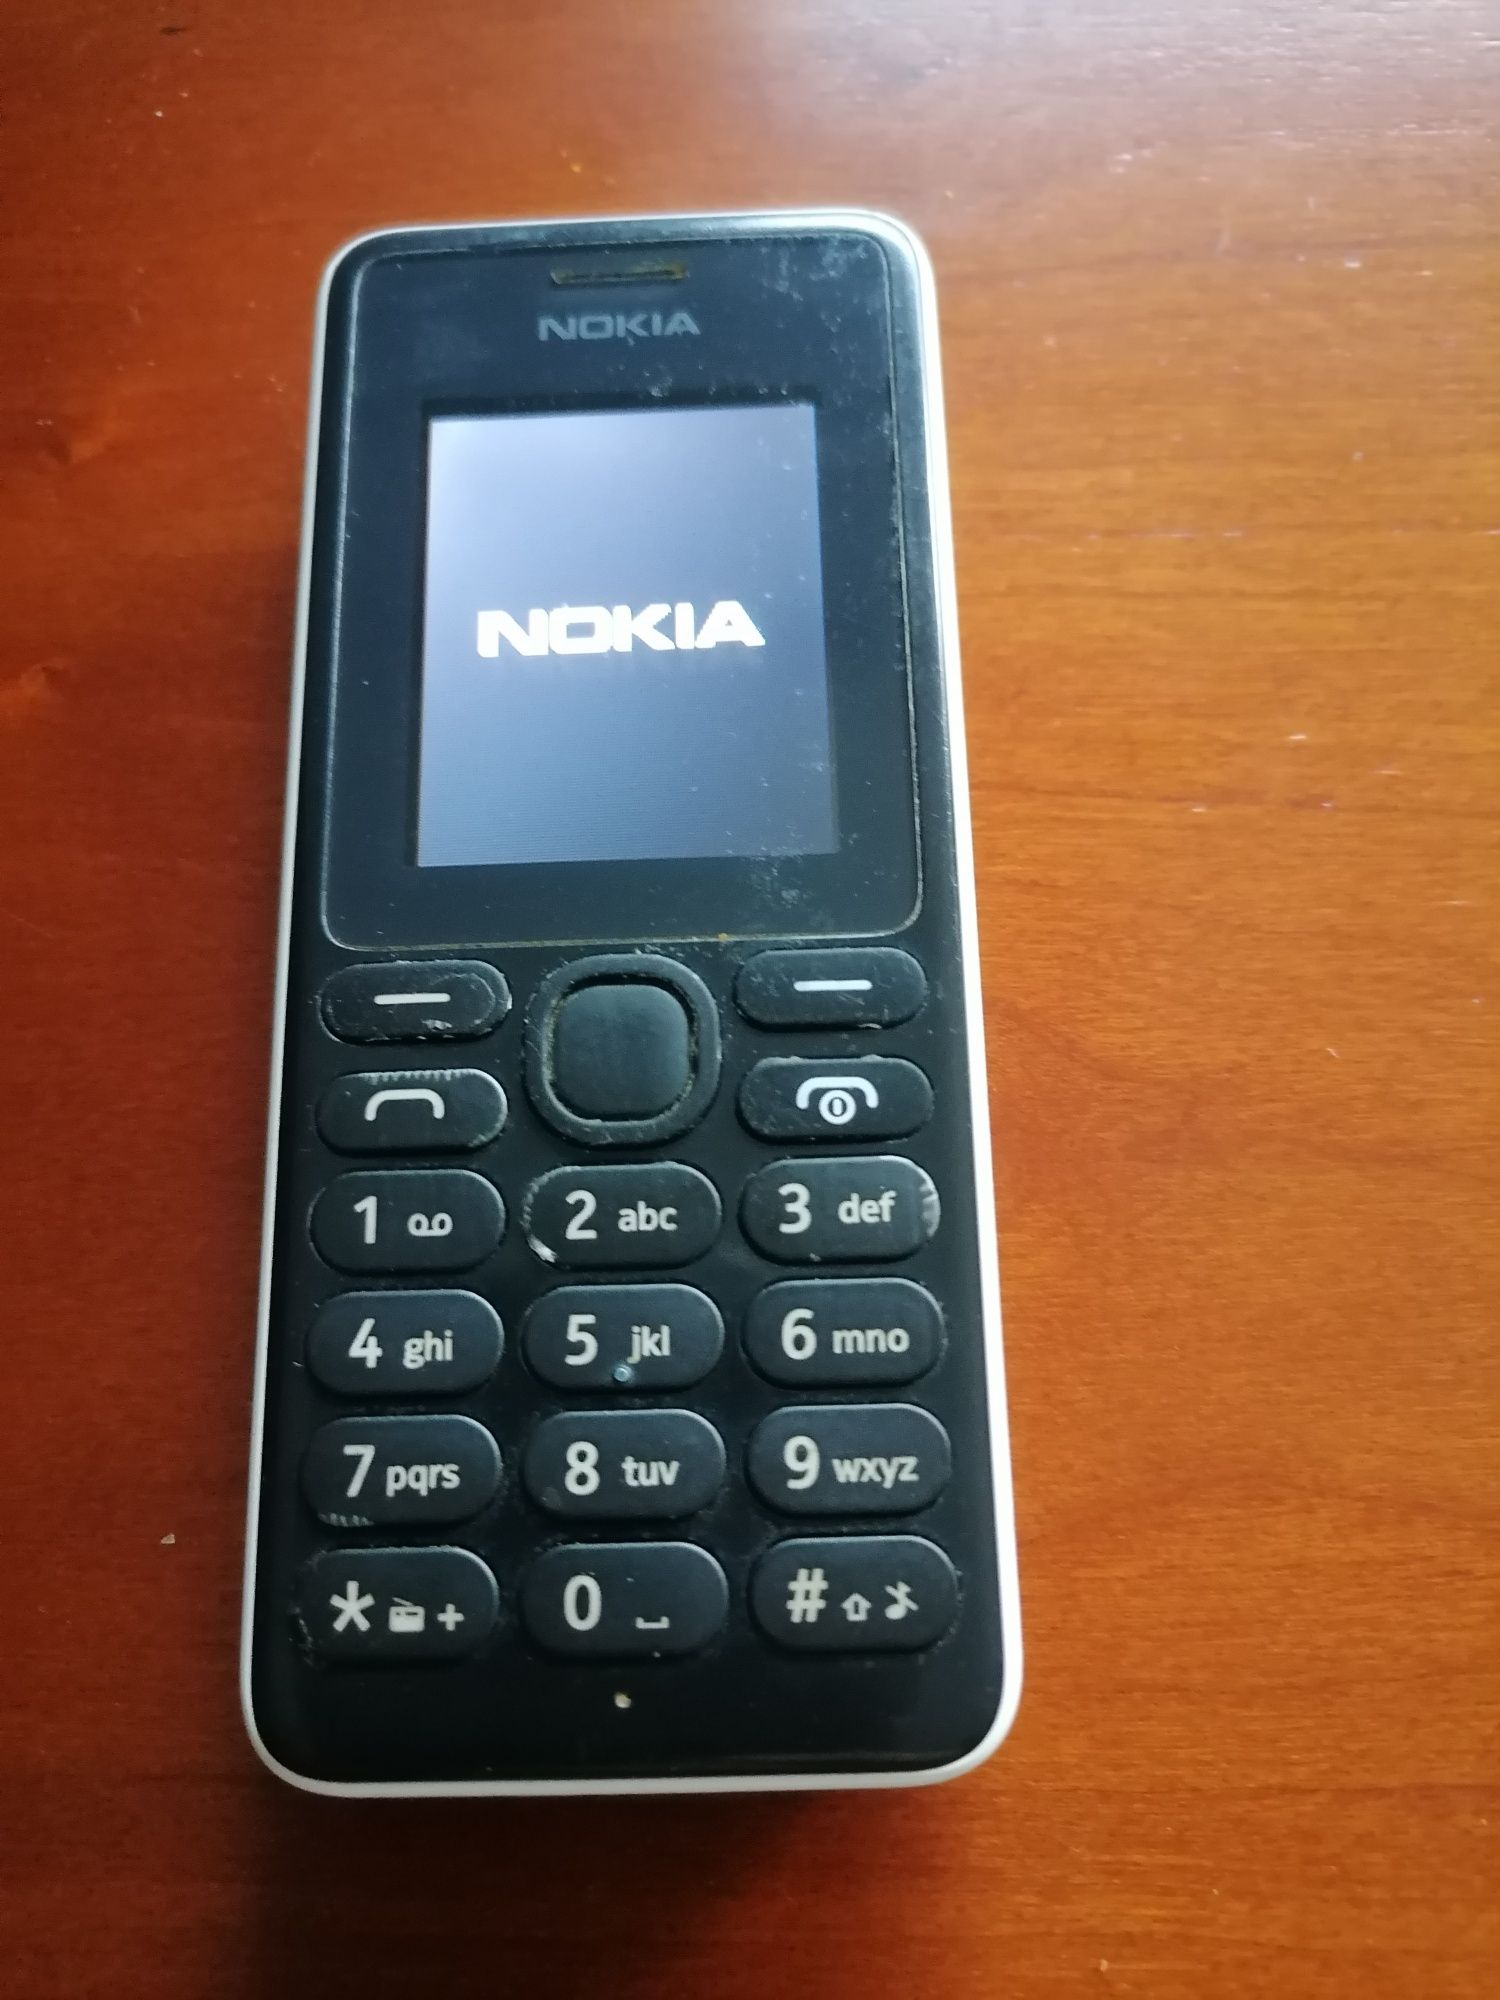 2 tlm Nokia usados